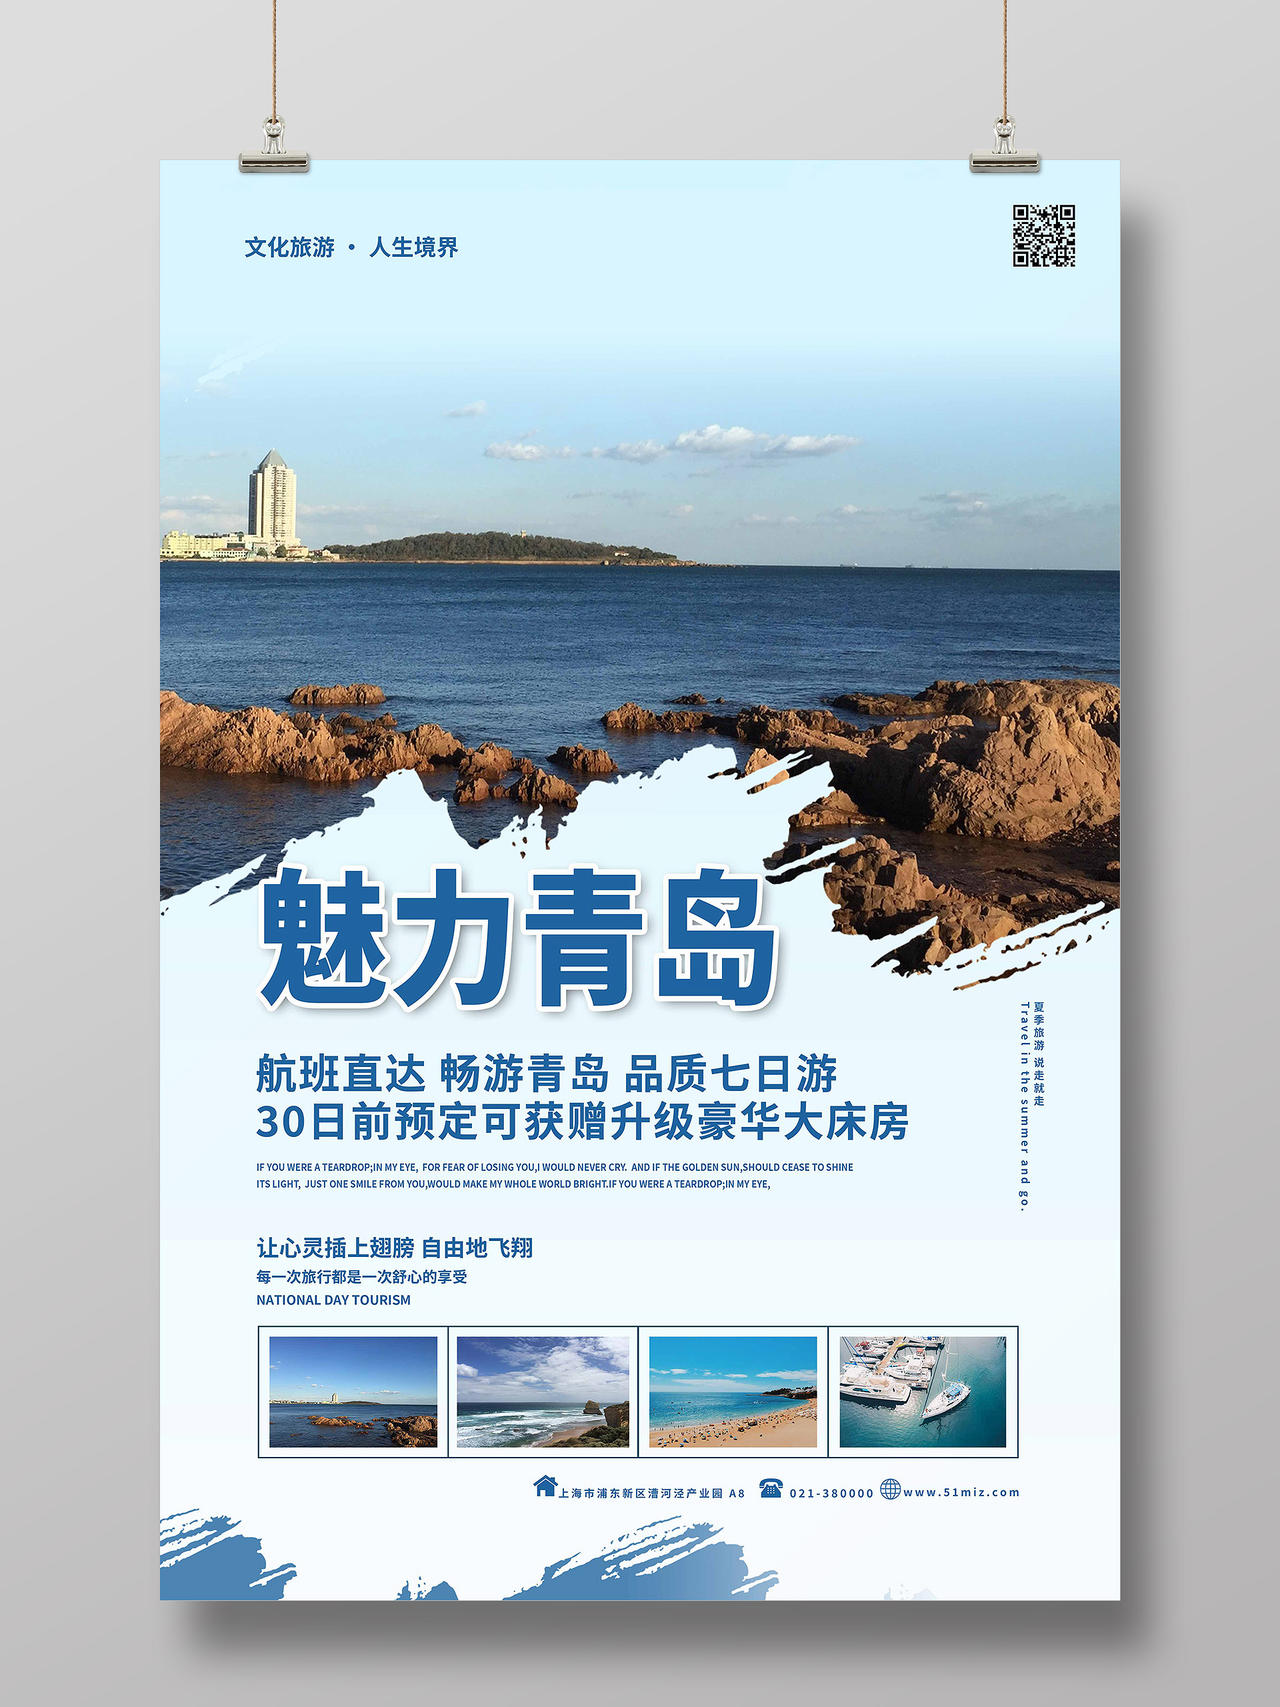 蓝色自然风景魅力青岛旅游宣传海报